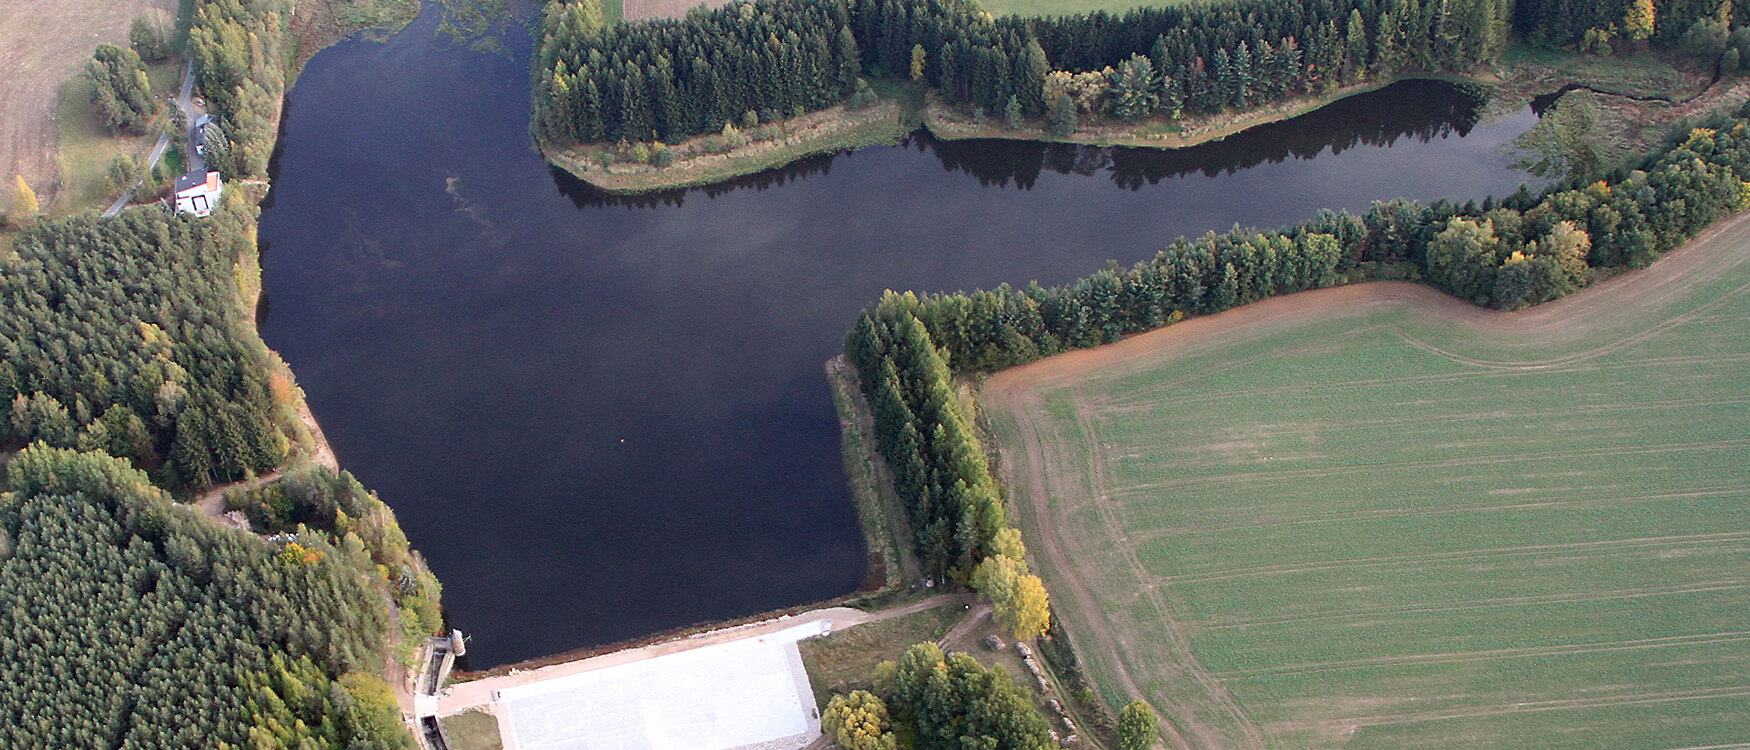 Luftbild eines Sees, umgeben von Wald und Feldern